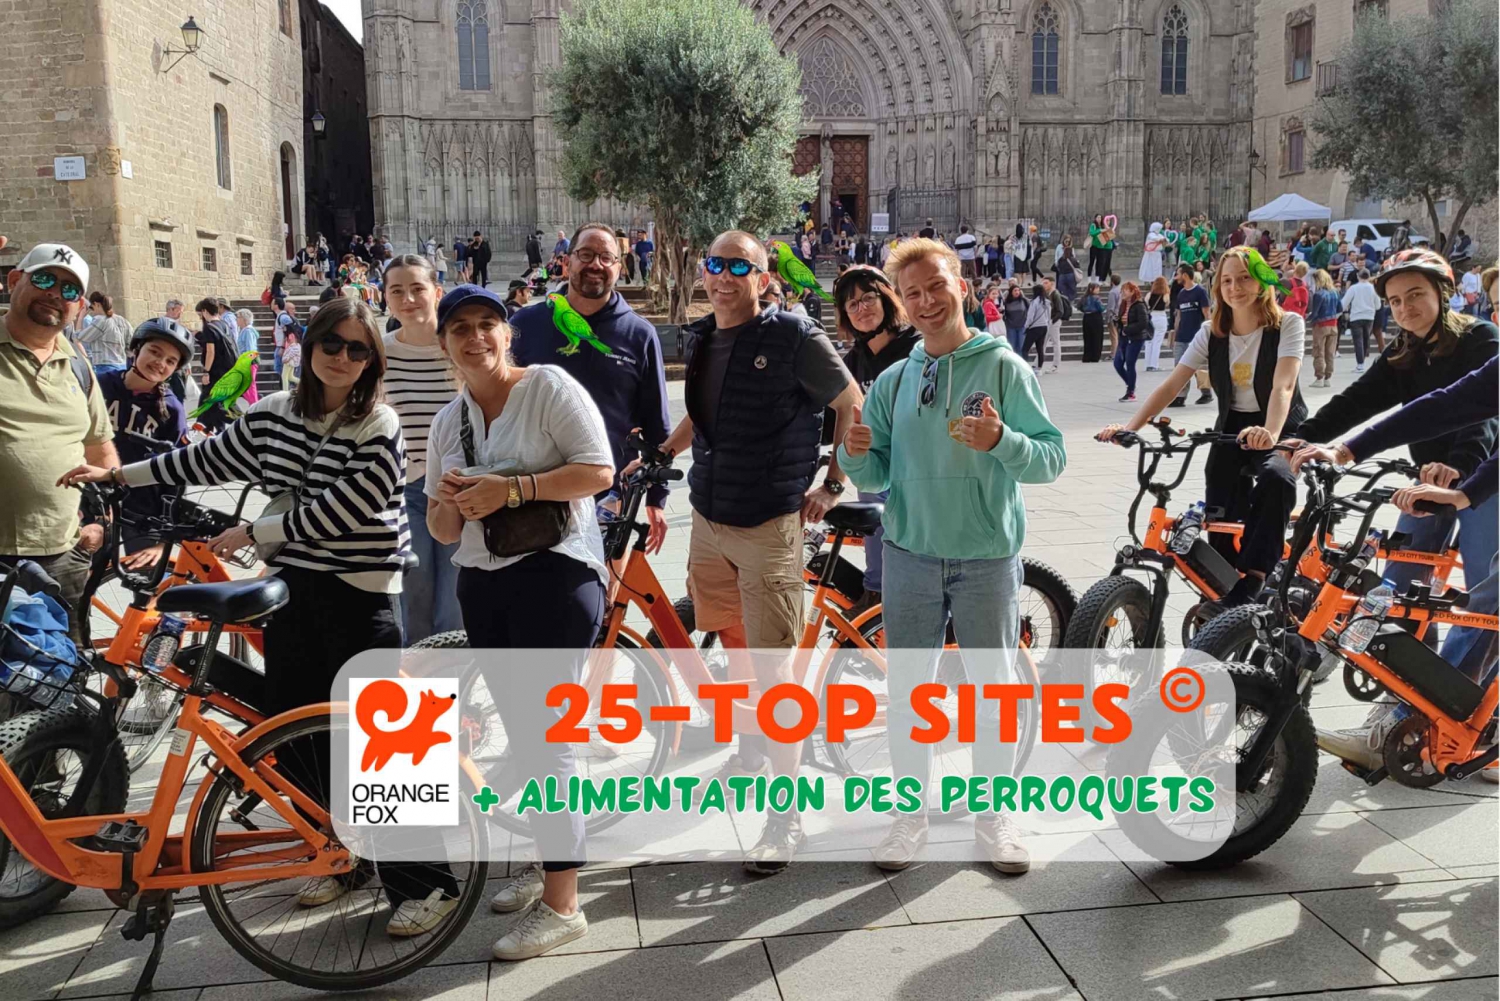 Barcelona Tour💕 mit französischem Guide 25-тop Sehenswürdigkeiten, Fahrrad/E-Bike